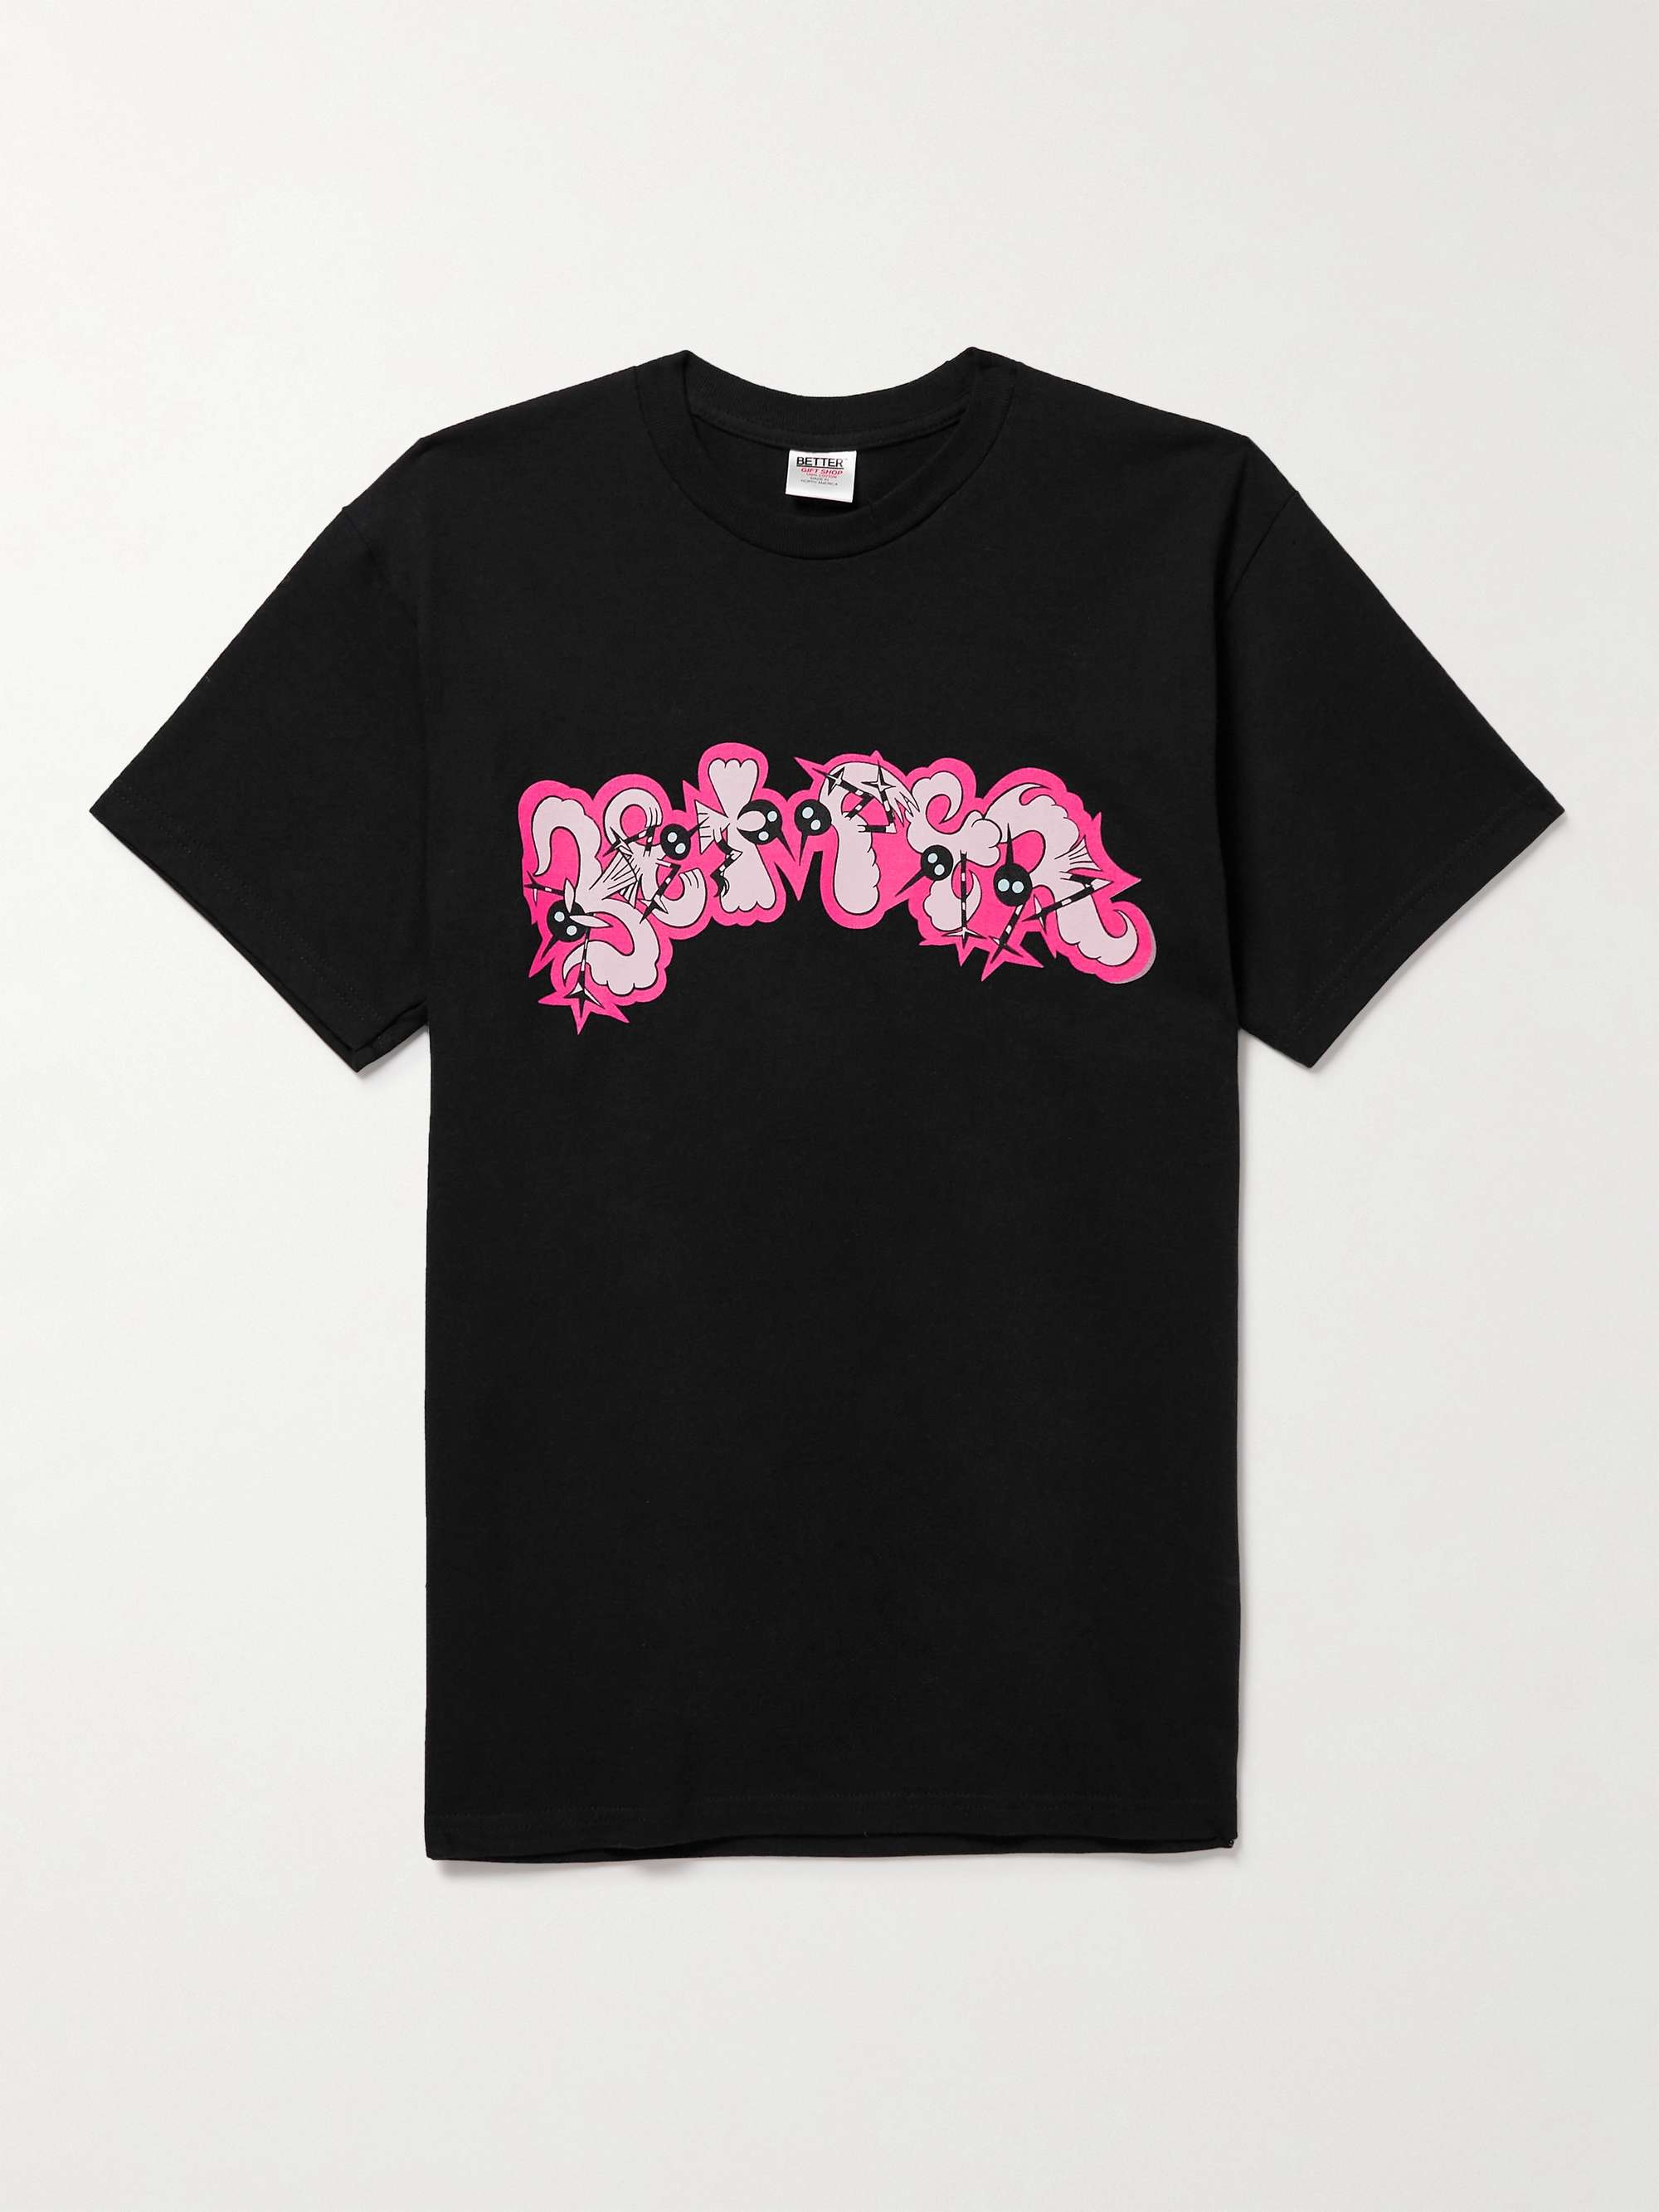 BETTER GIFT SHOP + Chris Lux Logo-Print Cotton Jersey T-shirt